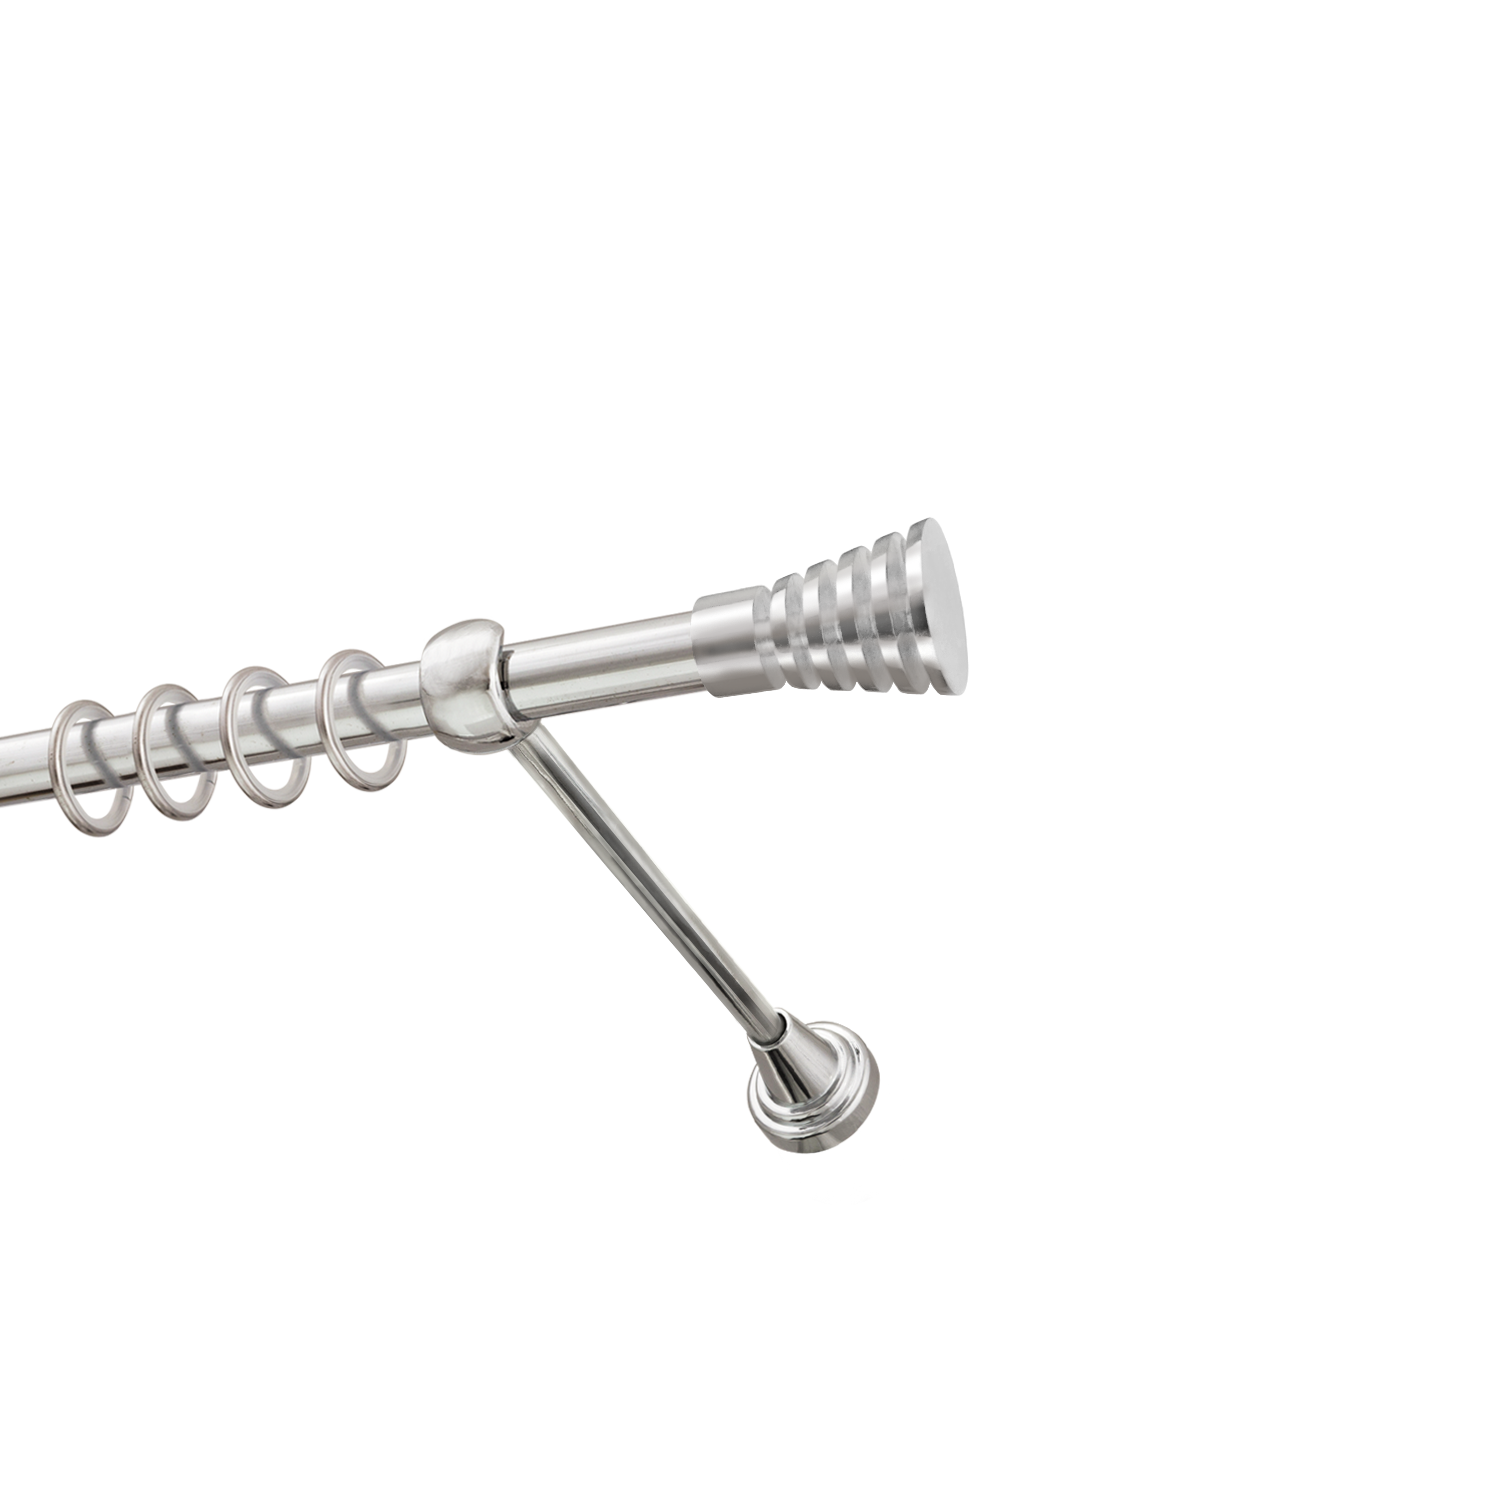 Металлический карниз для штор Верона, однорядный 16 мм, серебро, гладкая штанга, длина 300 см - фото Wikidecor.ru